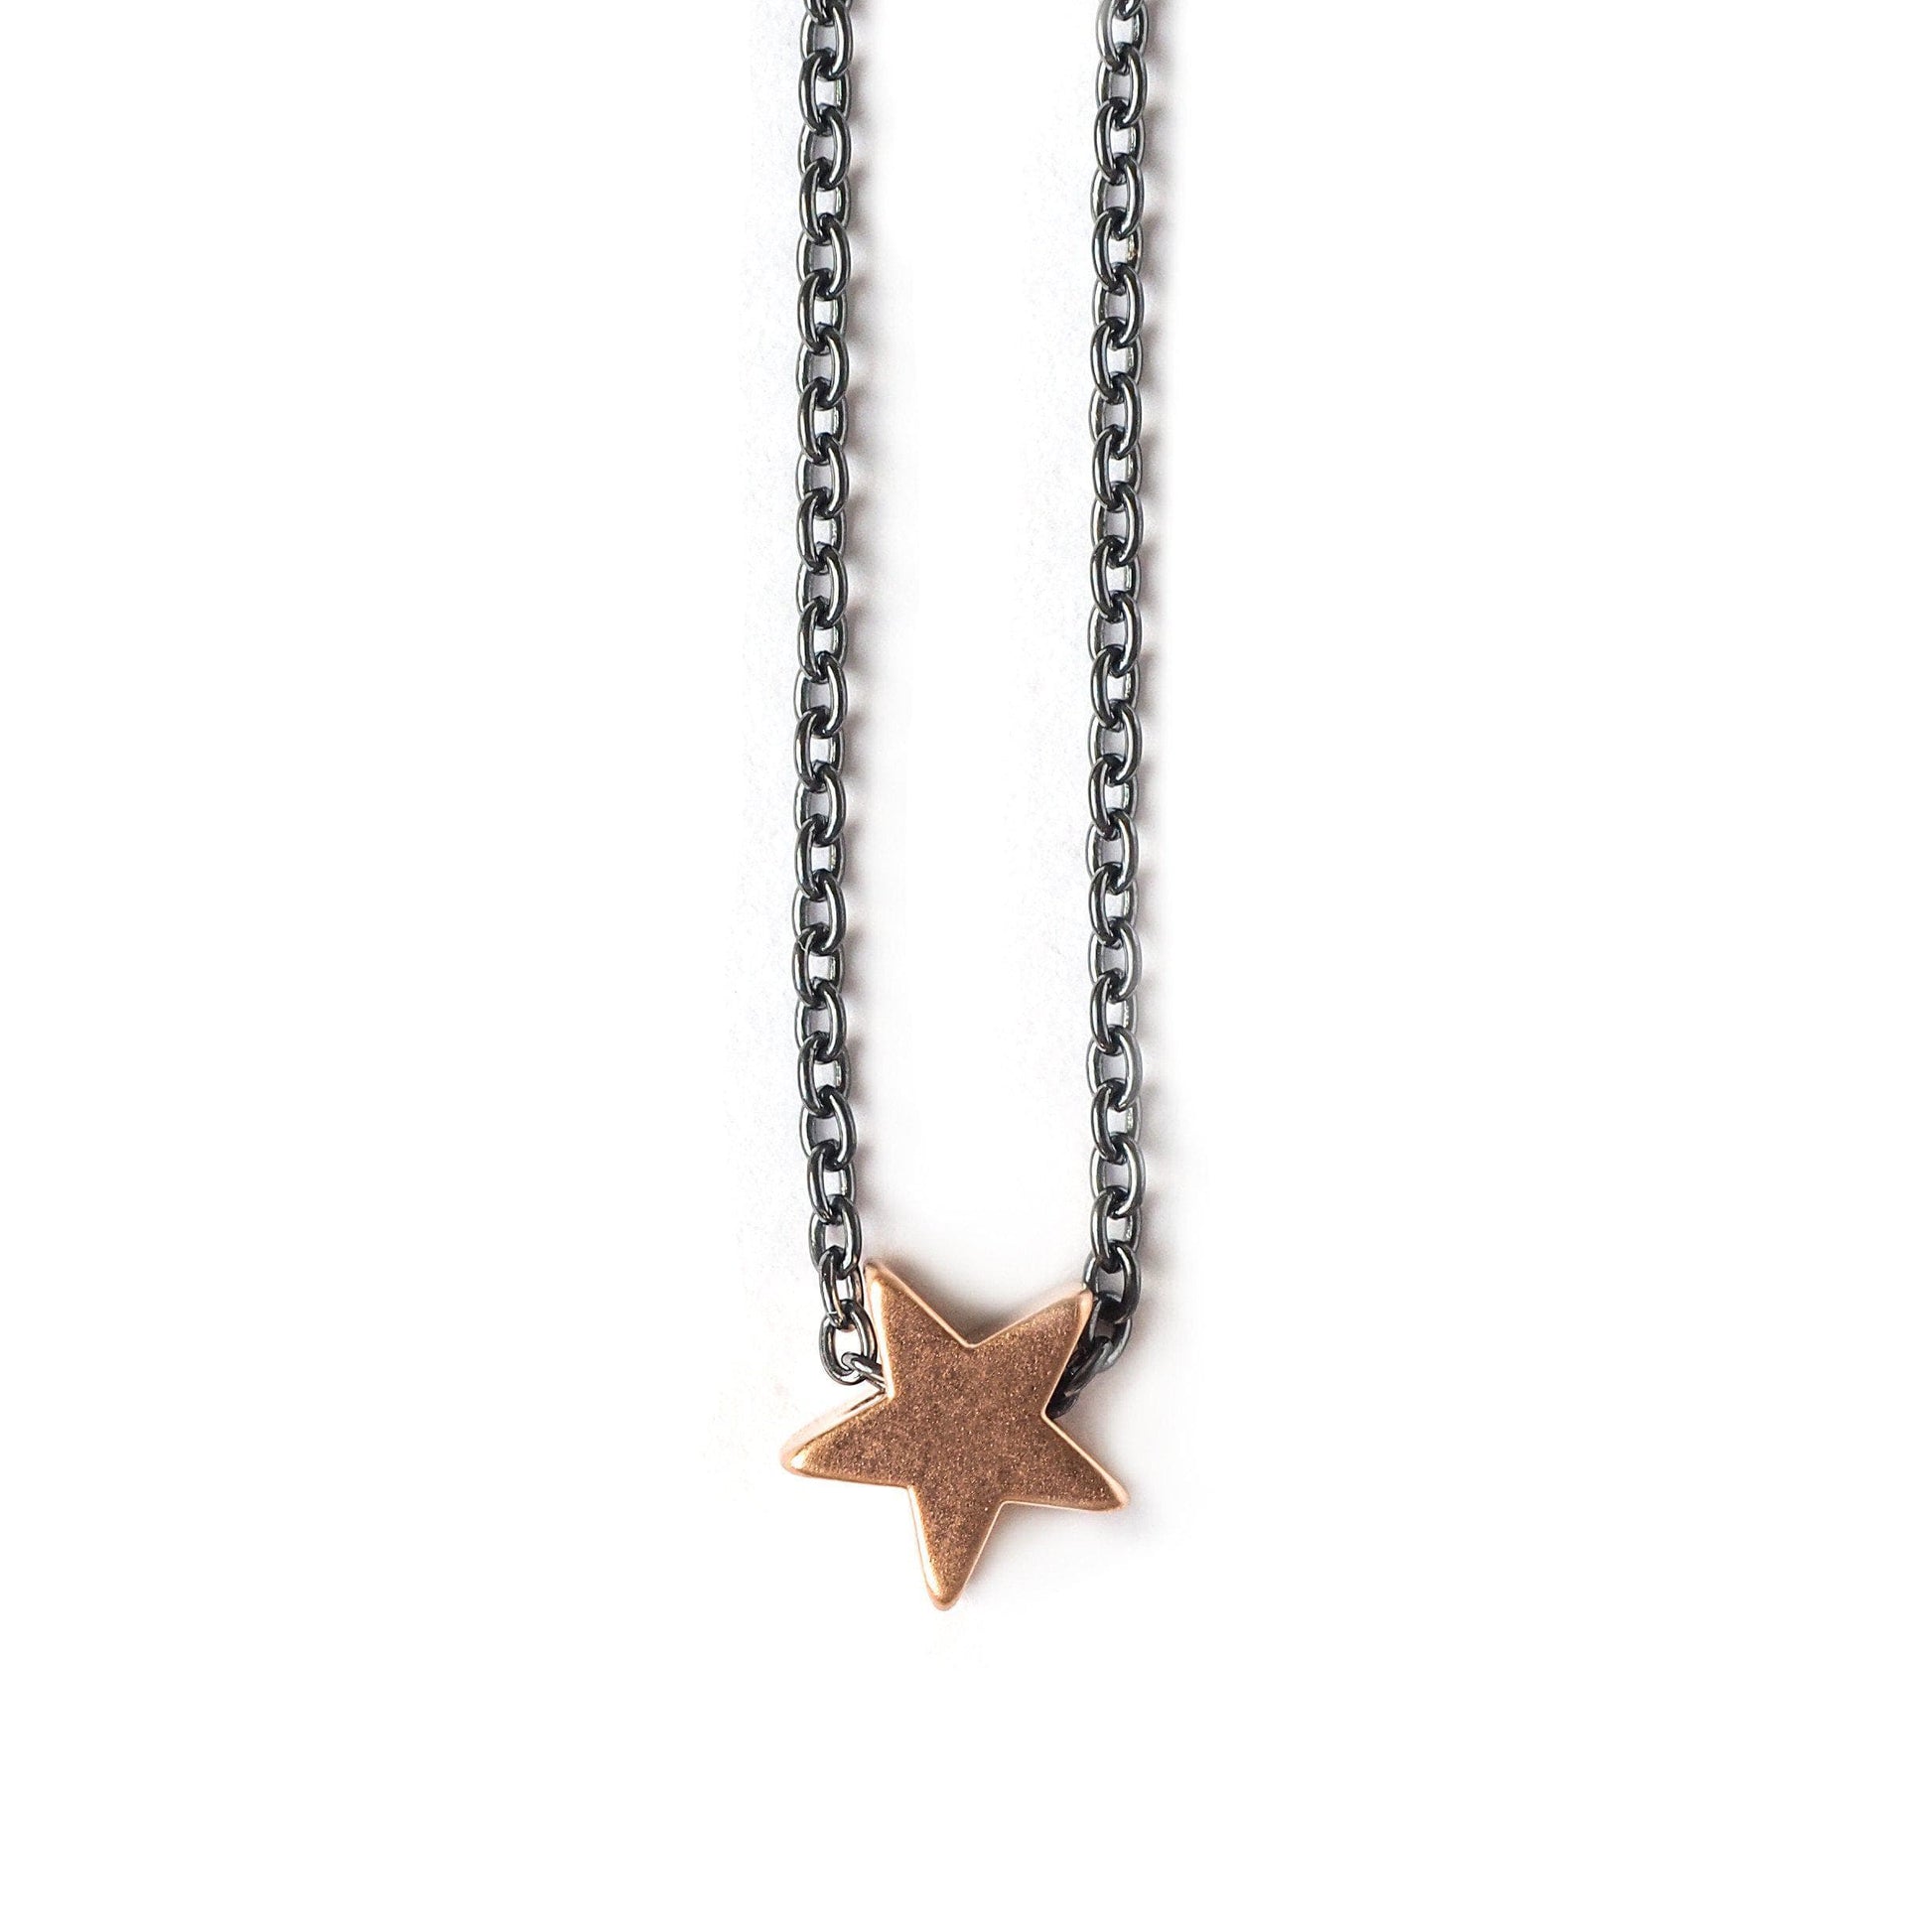  Star Necklace, Necklaces, adorn512, adorn512